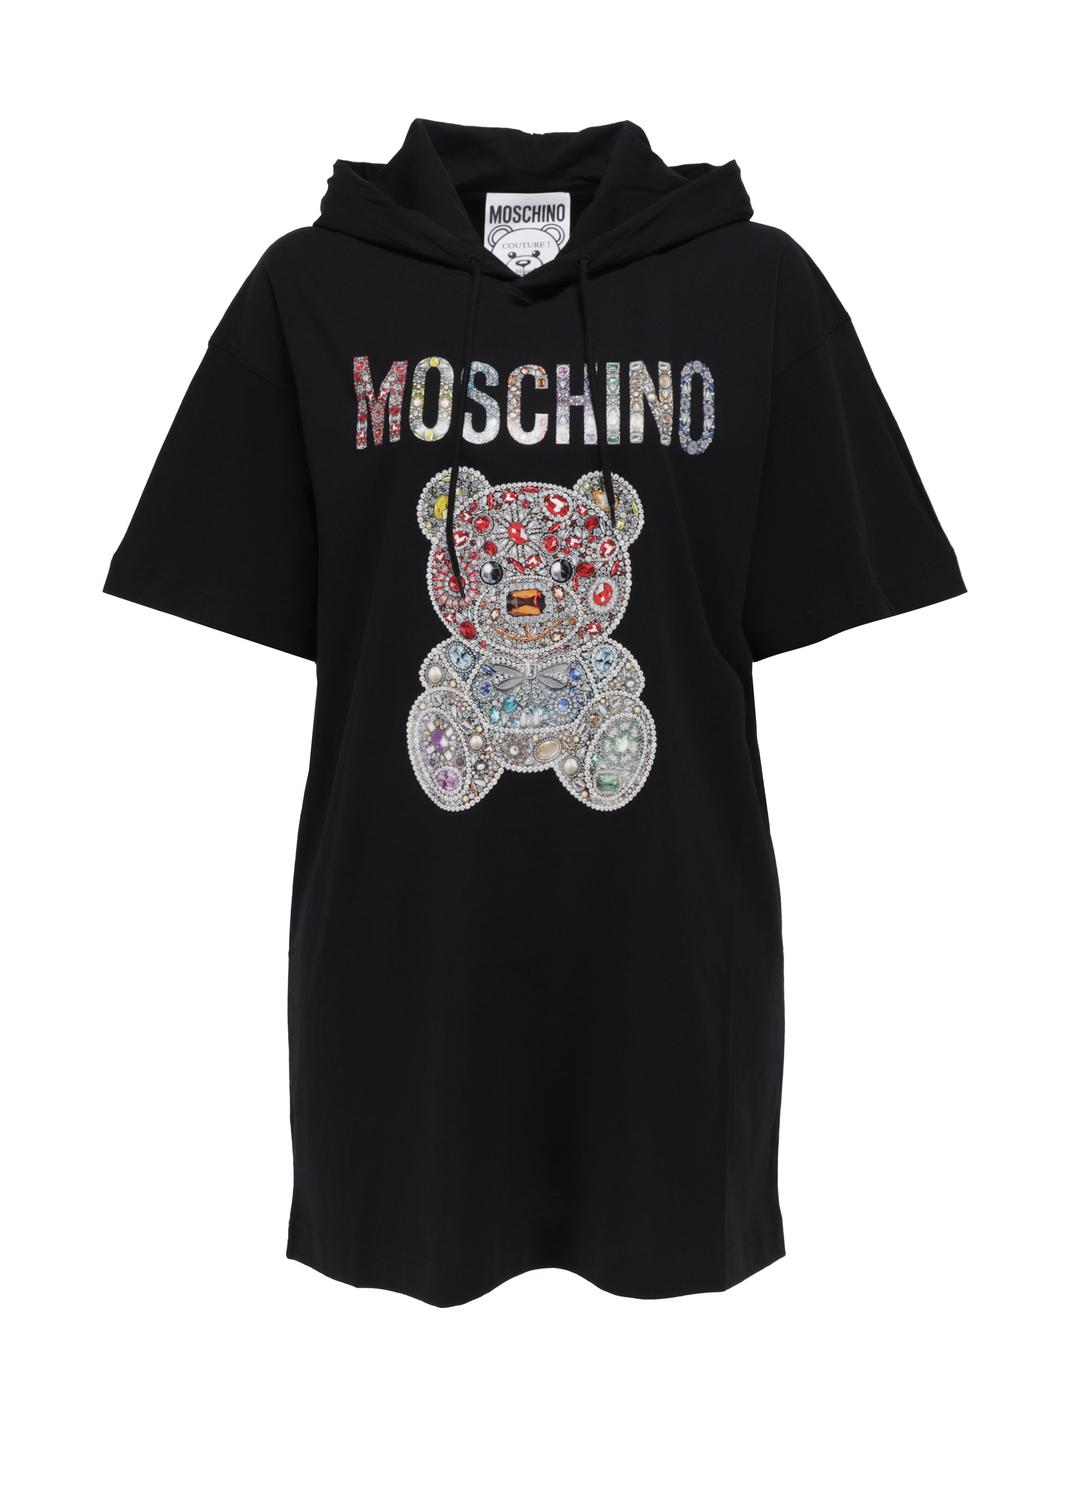 Moschino vestido Teddy Bear MSC-V0463